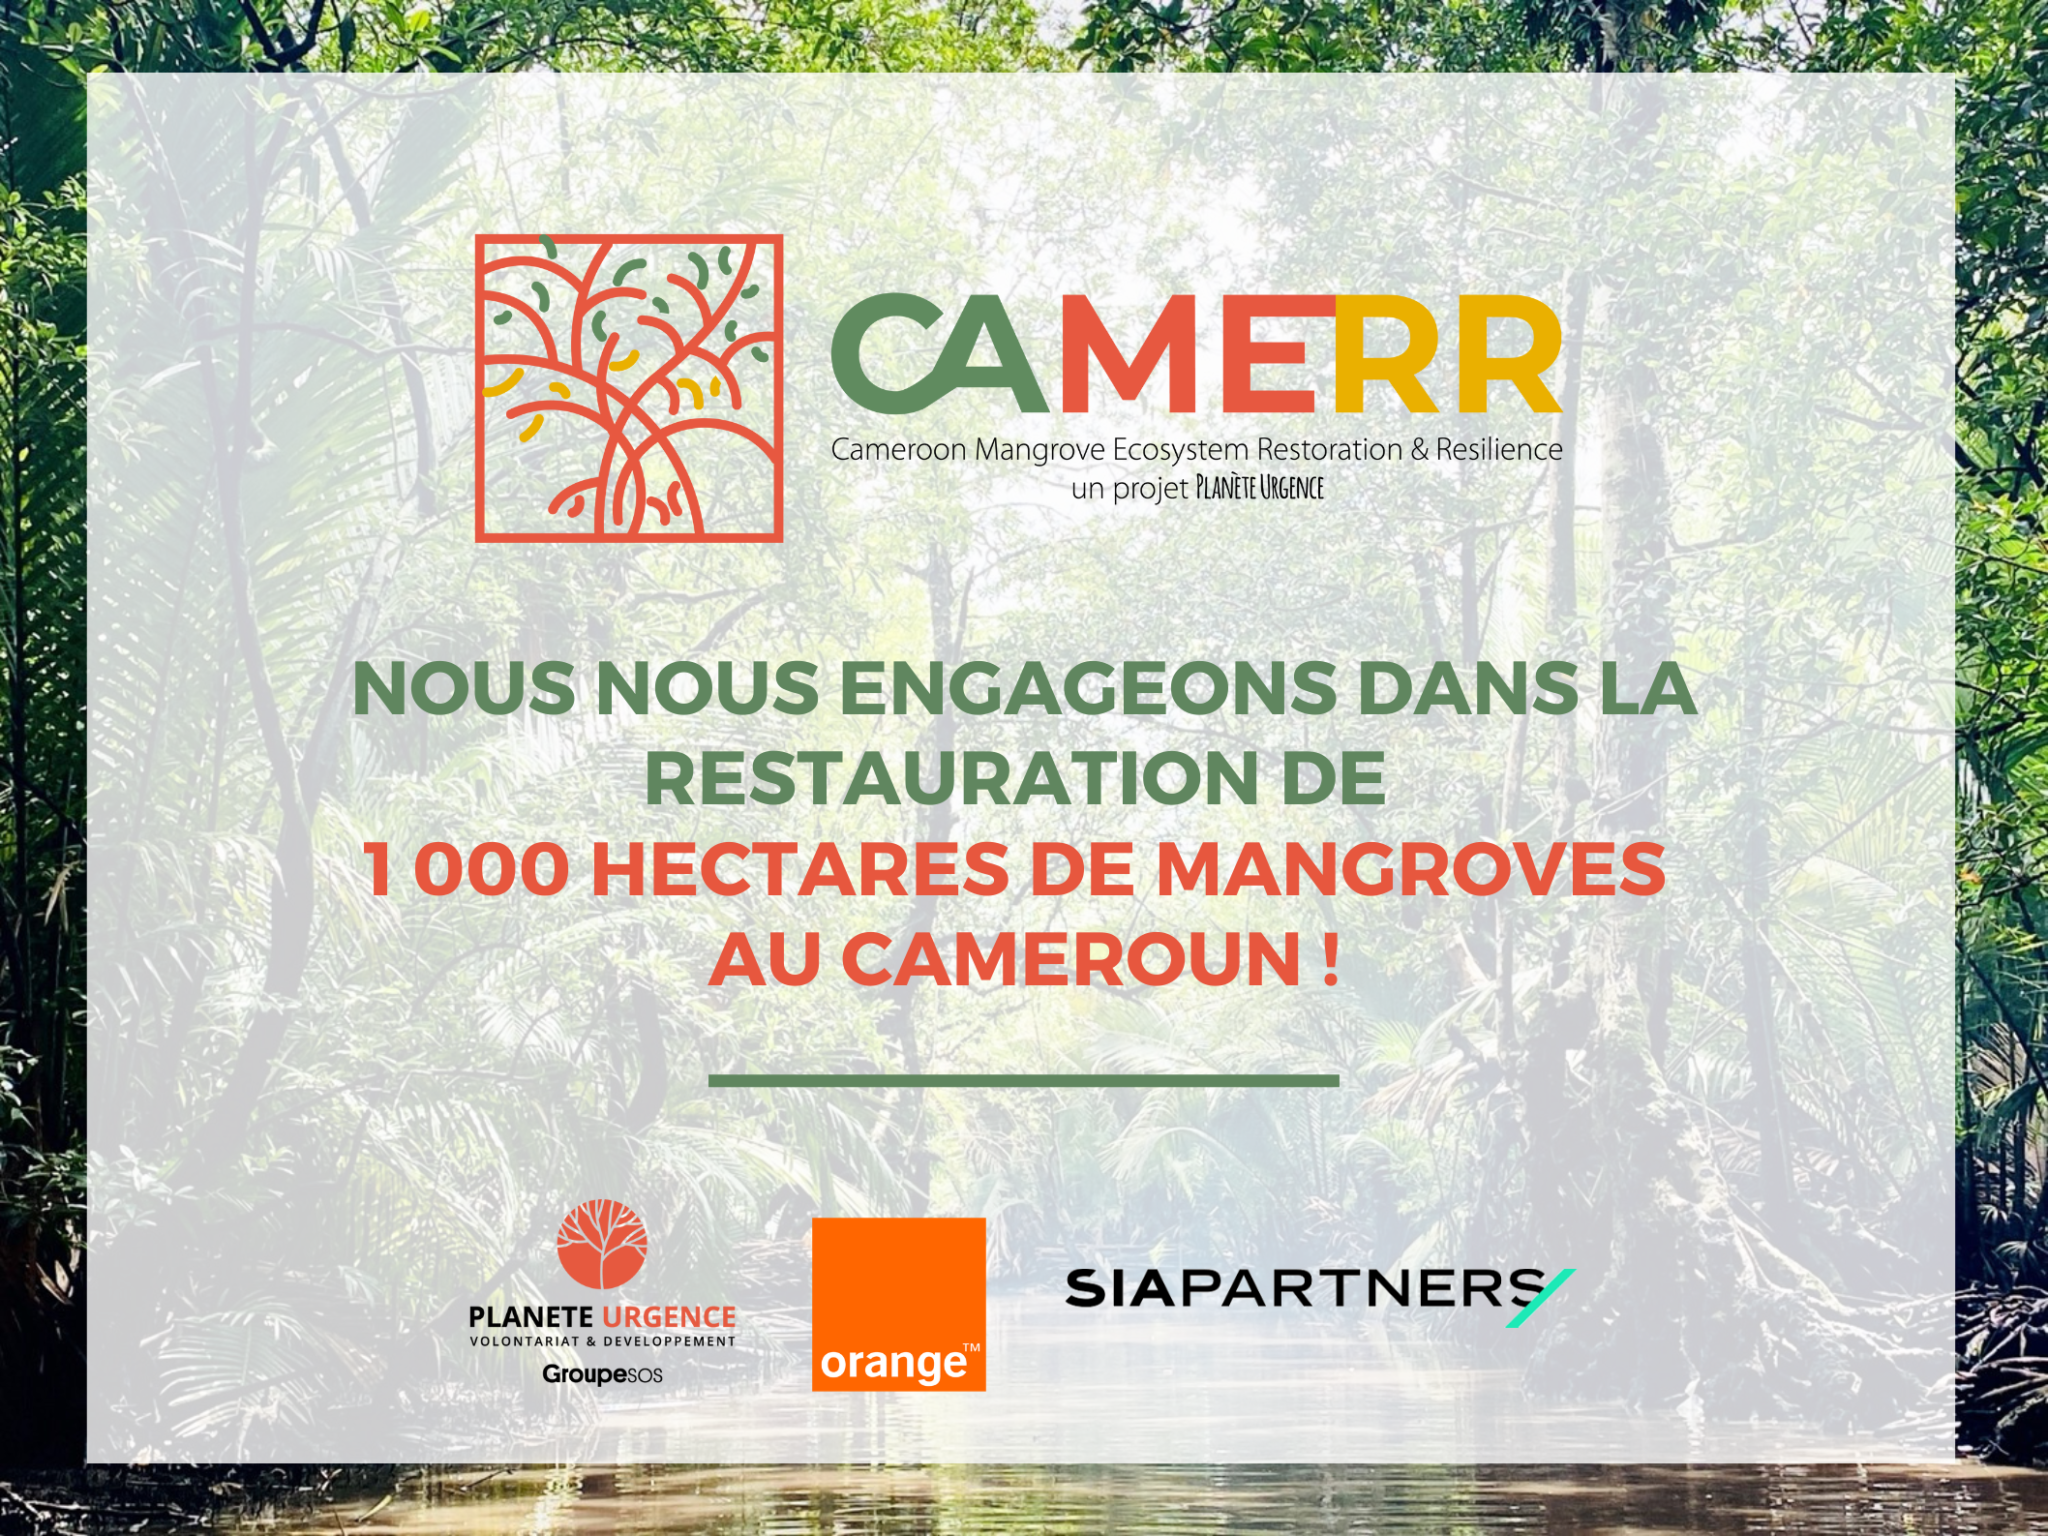 Planète Urgence, Sia partners et Orange lance un projet de restauration de mangroves au cameroun